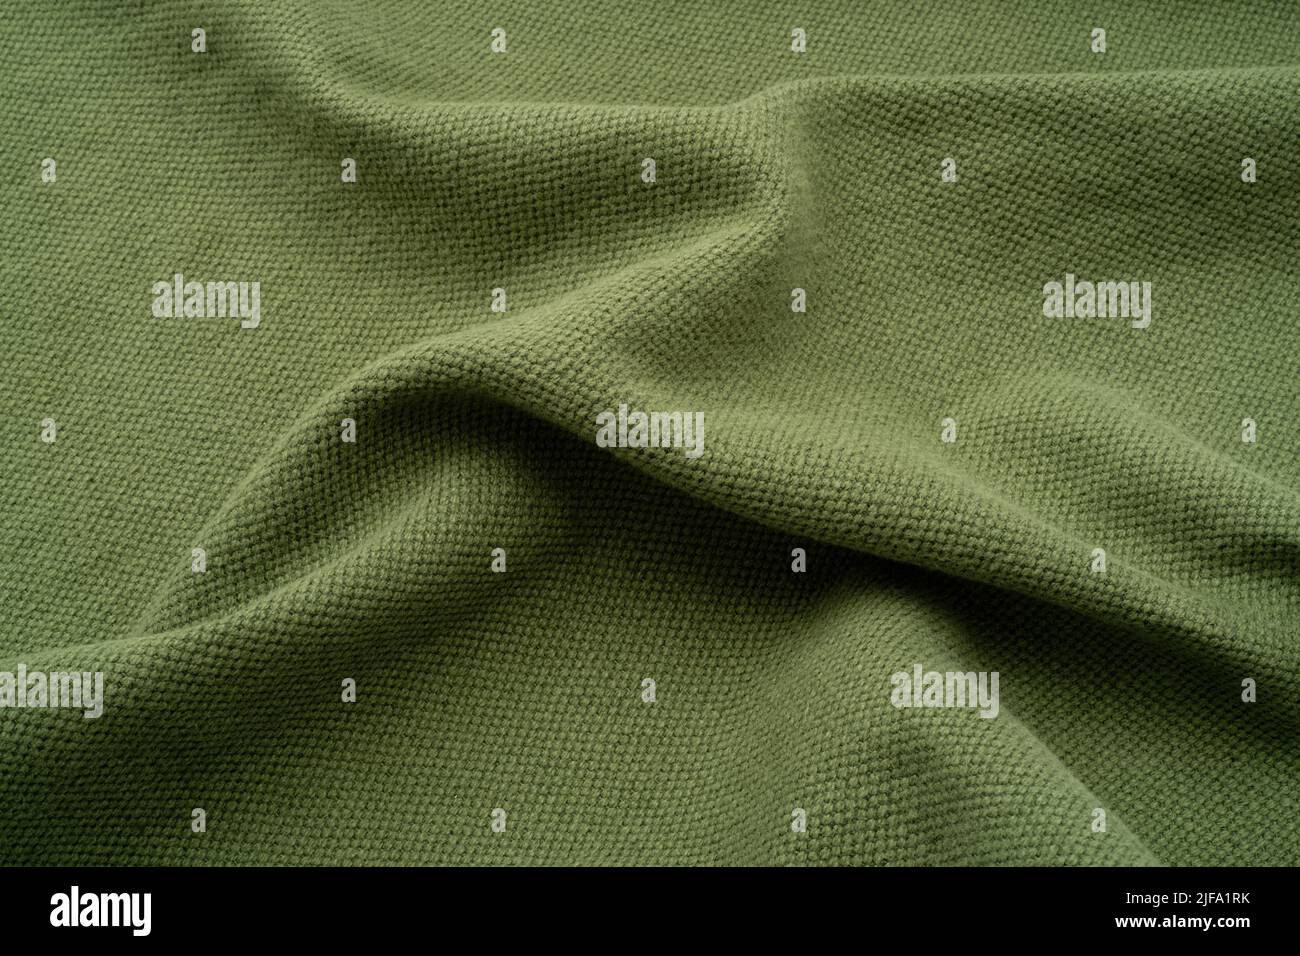 Fondo de tela texturizada. Un lino fruncido de color verde oliva. Foto de stock